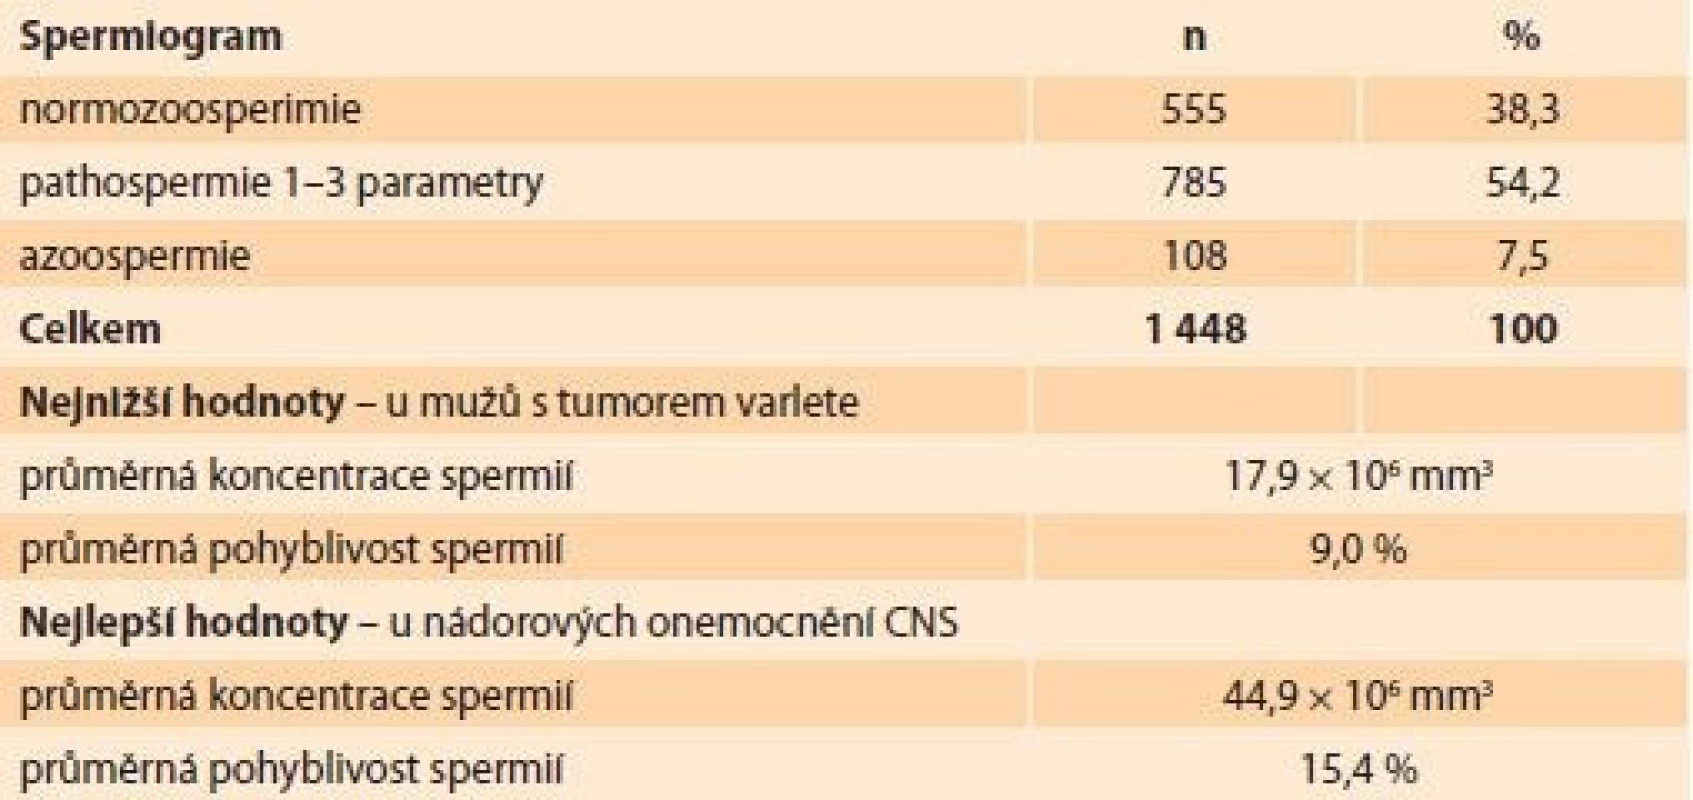 Hodnoty spermiogramů u onkologických pacientů. </br> Values of spermiograms in cancer patients.